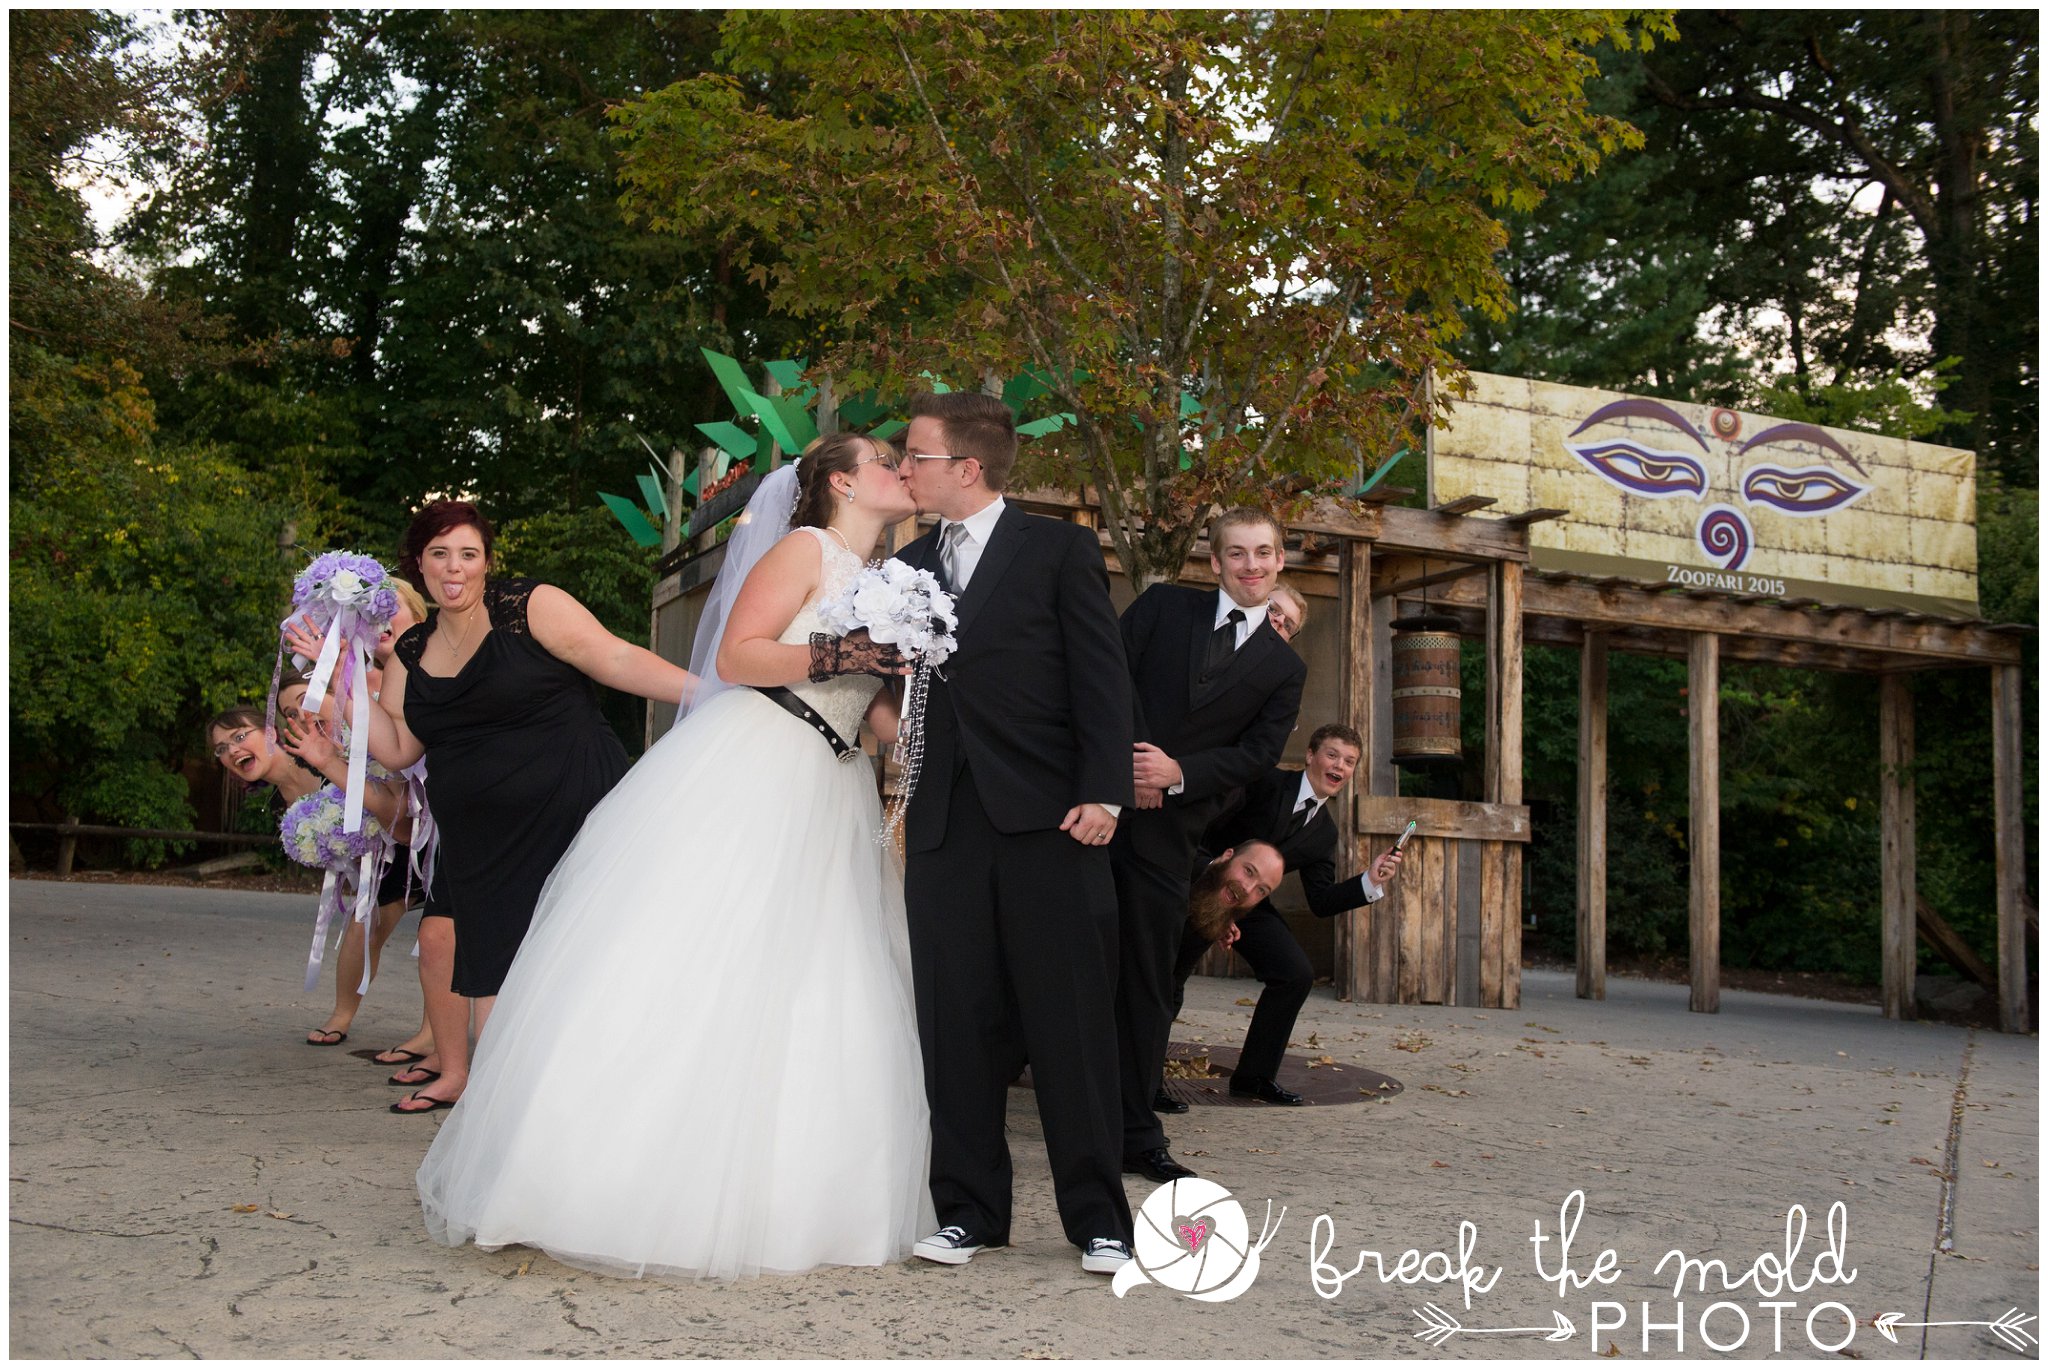 break-the-mold-photo-wedding-zoo-knoxville-tn_5967.jpg